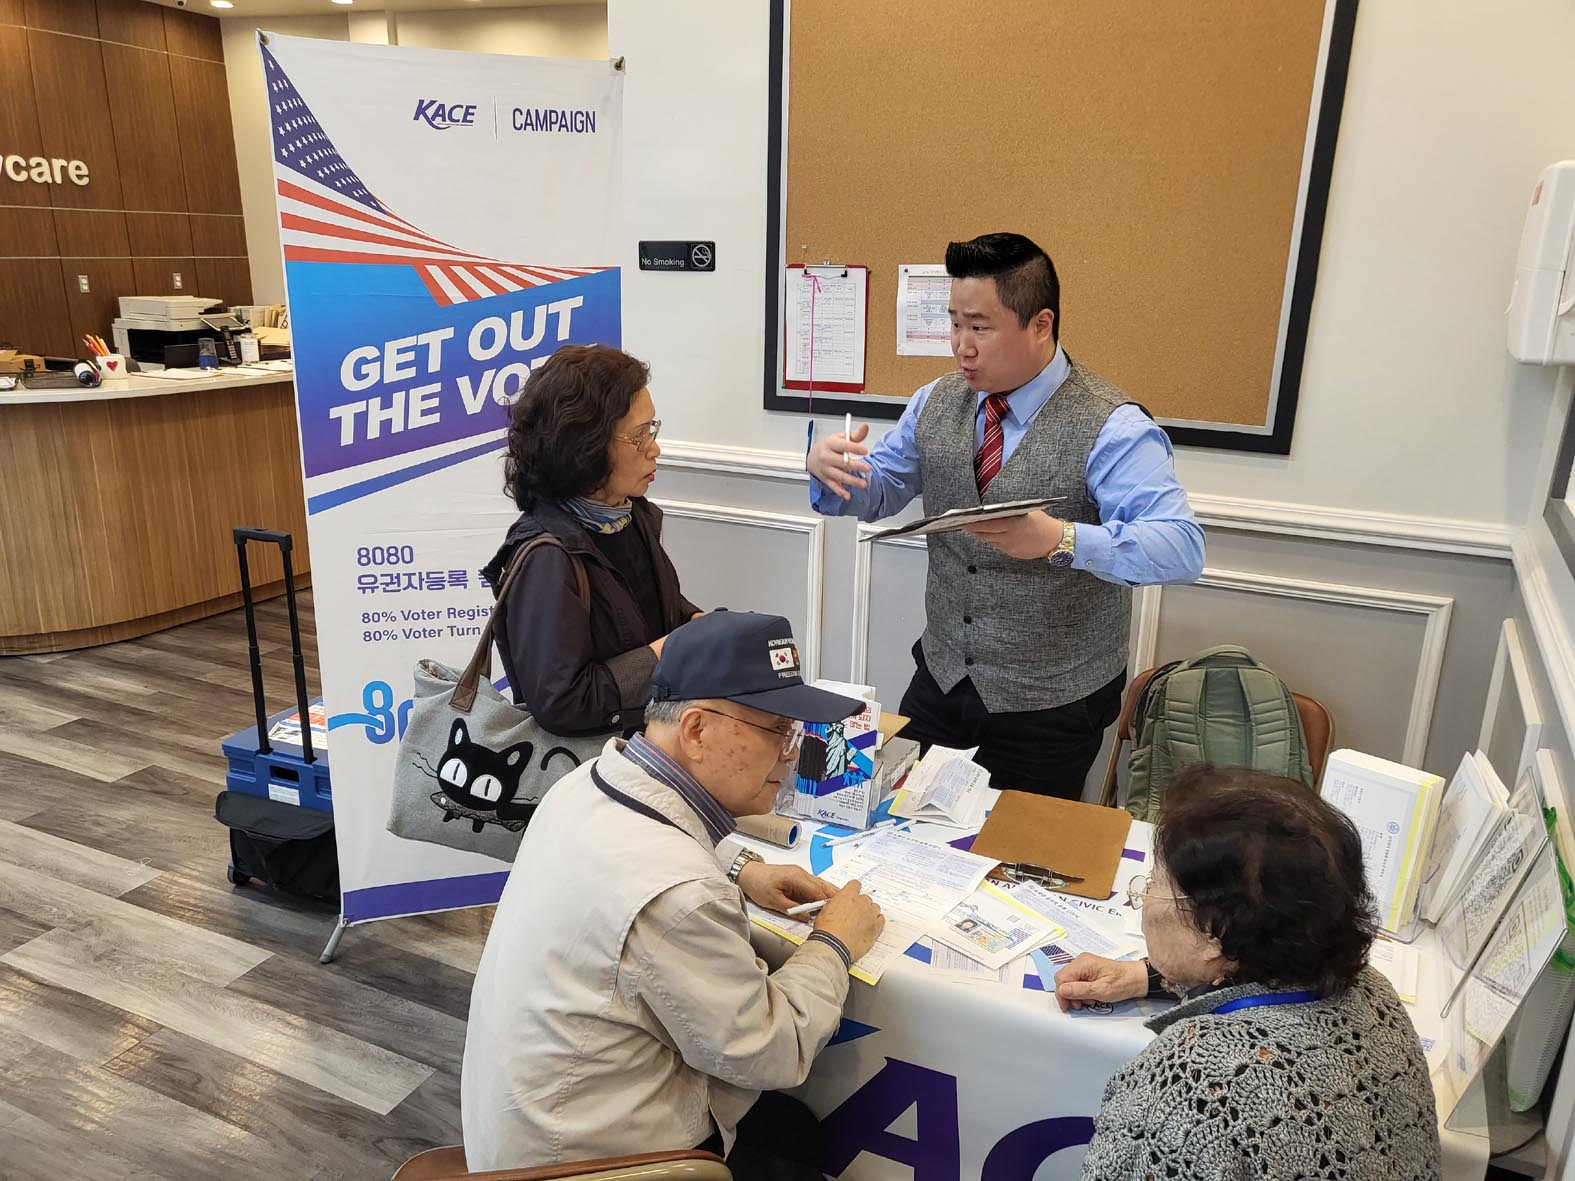 시민참여센터(KACE)가 지난 26일 BNB 데이케어센터를 방문해 8080캠페인을 전개, 10여 명의 한인 유권자등록을 도왔다. 시민참여센터는 80% 이상 유권자 등록과 80% 이상 투표 참여를 위해 연중 8080 캠페인을 전개하고 있다. [시민참여센터]